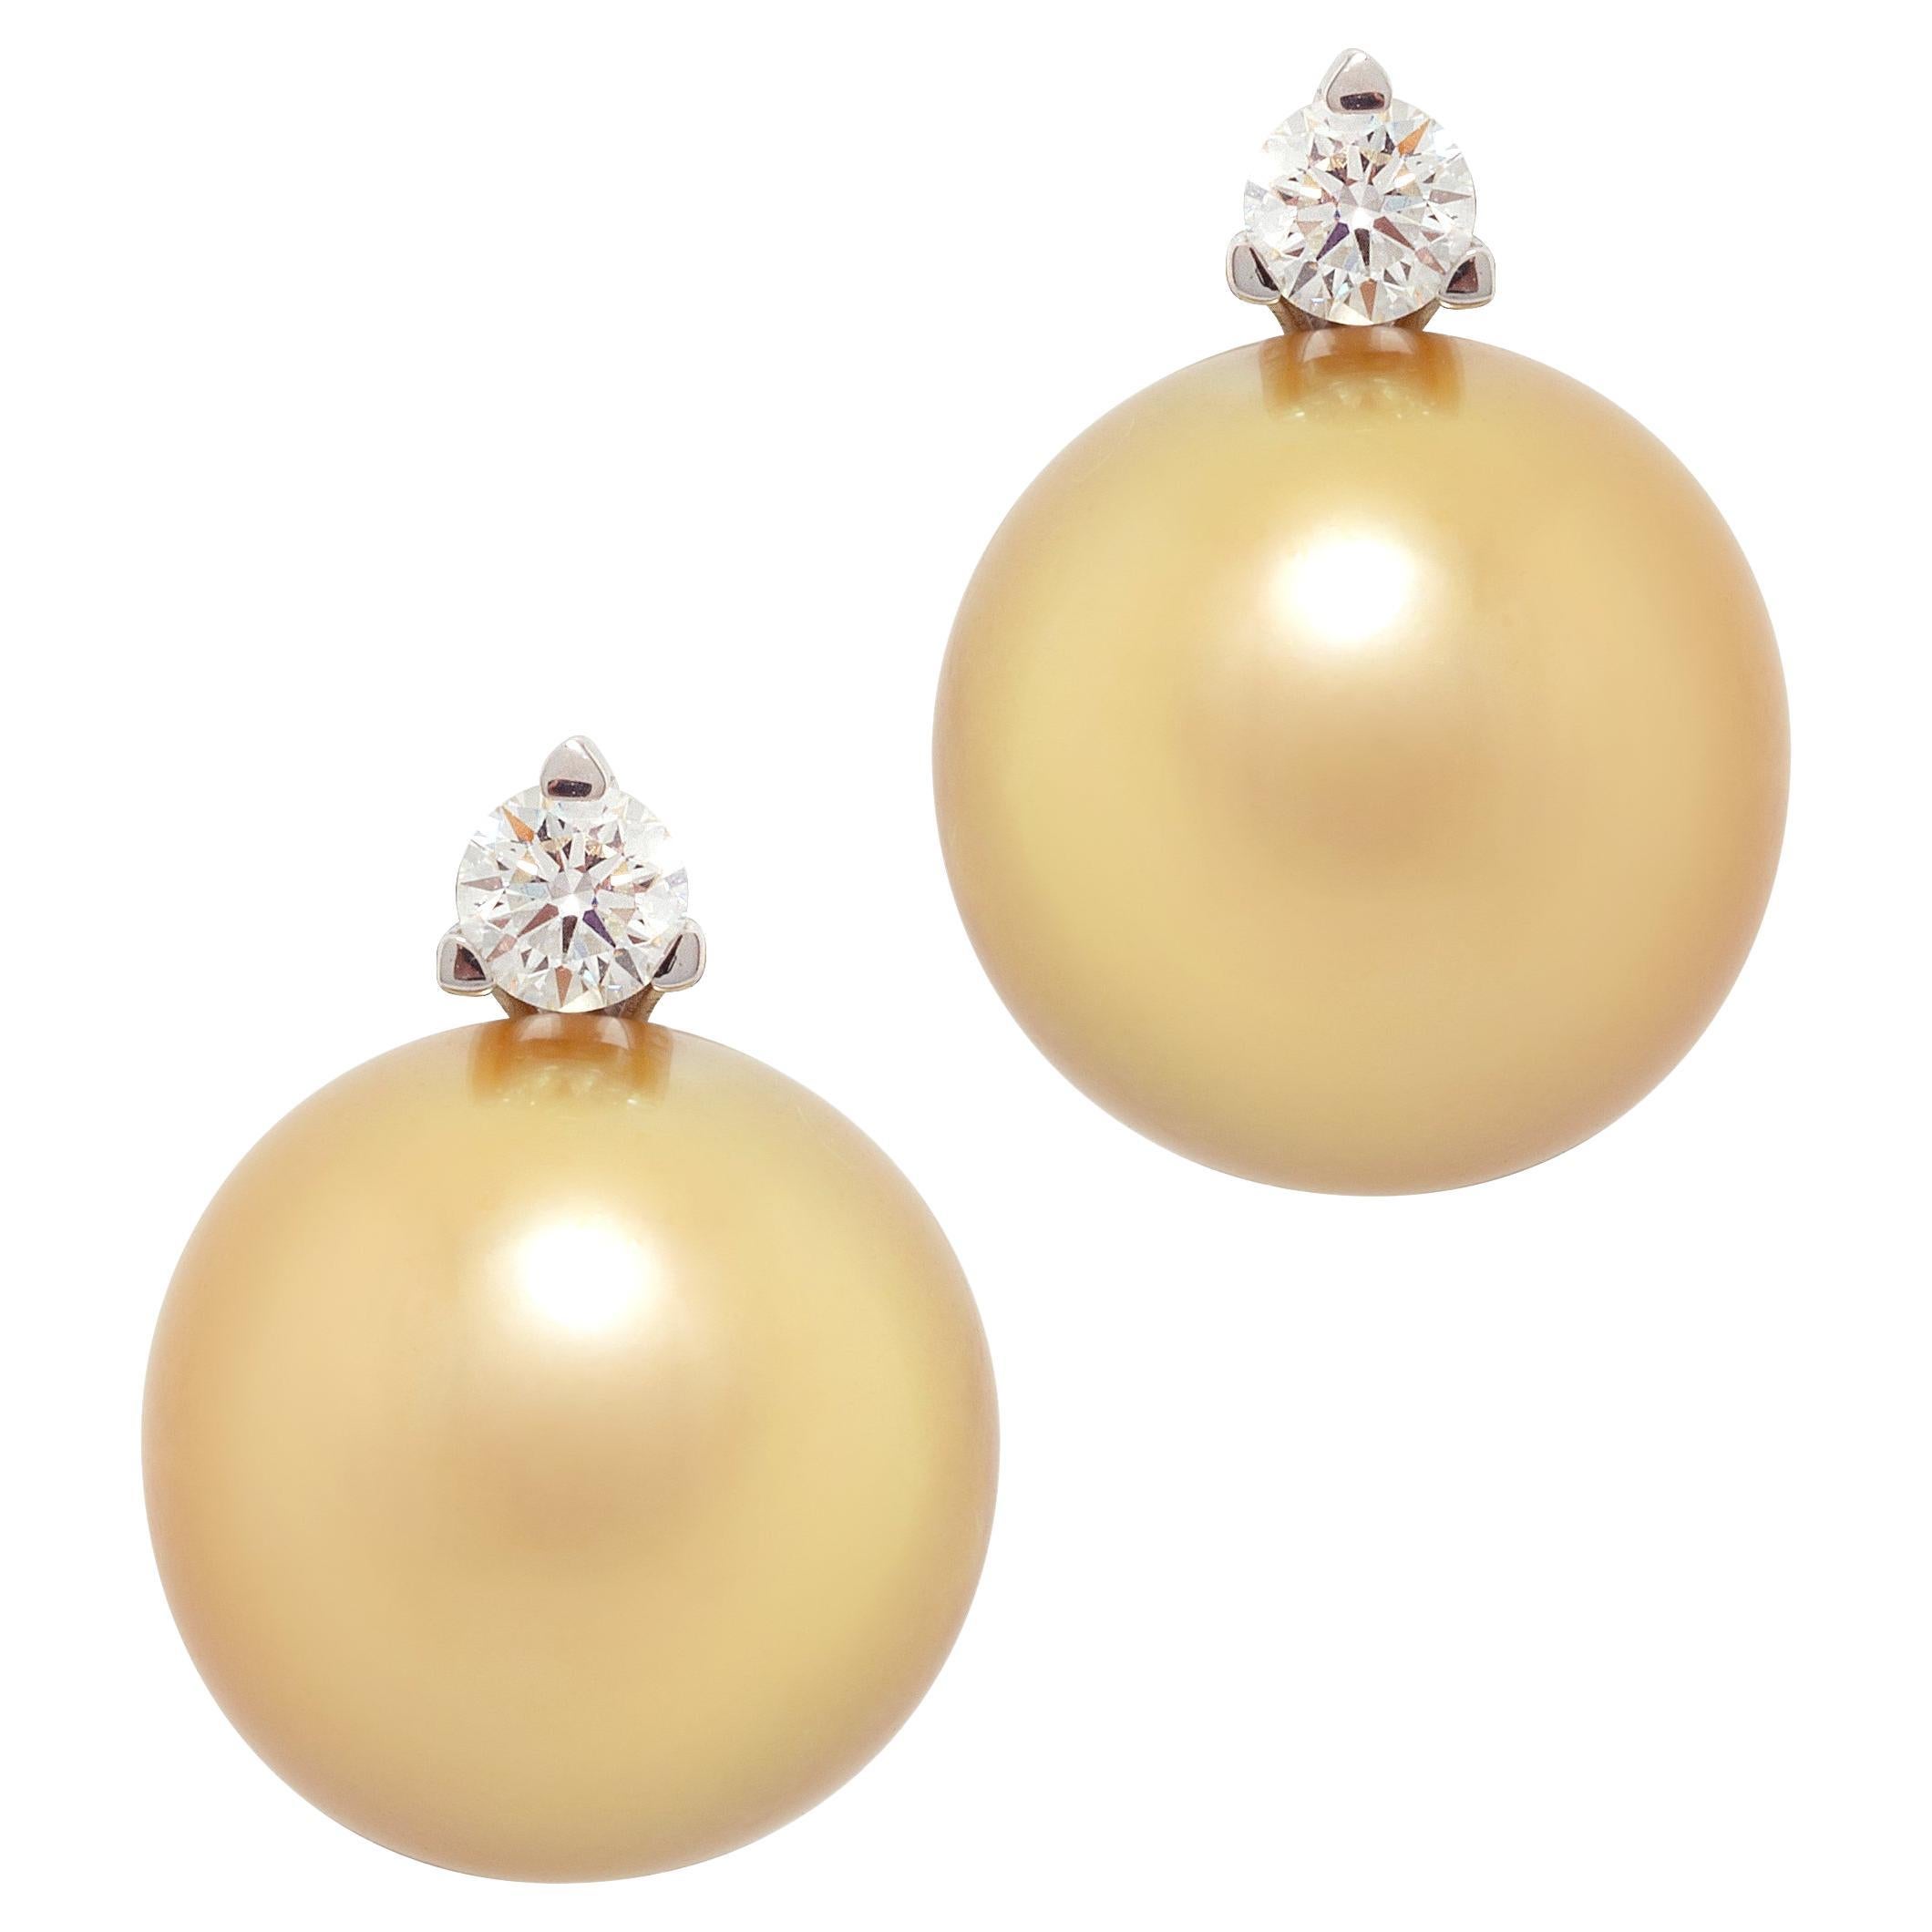 Ella Gafter Golden Pearl Diamond Clip-on Earrings